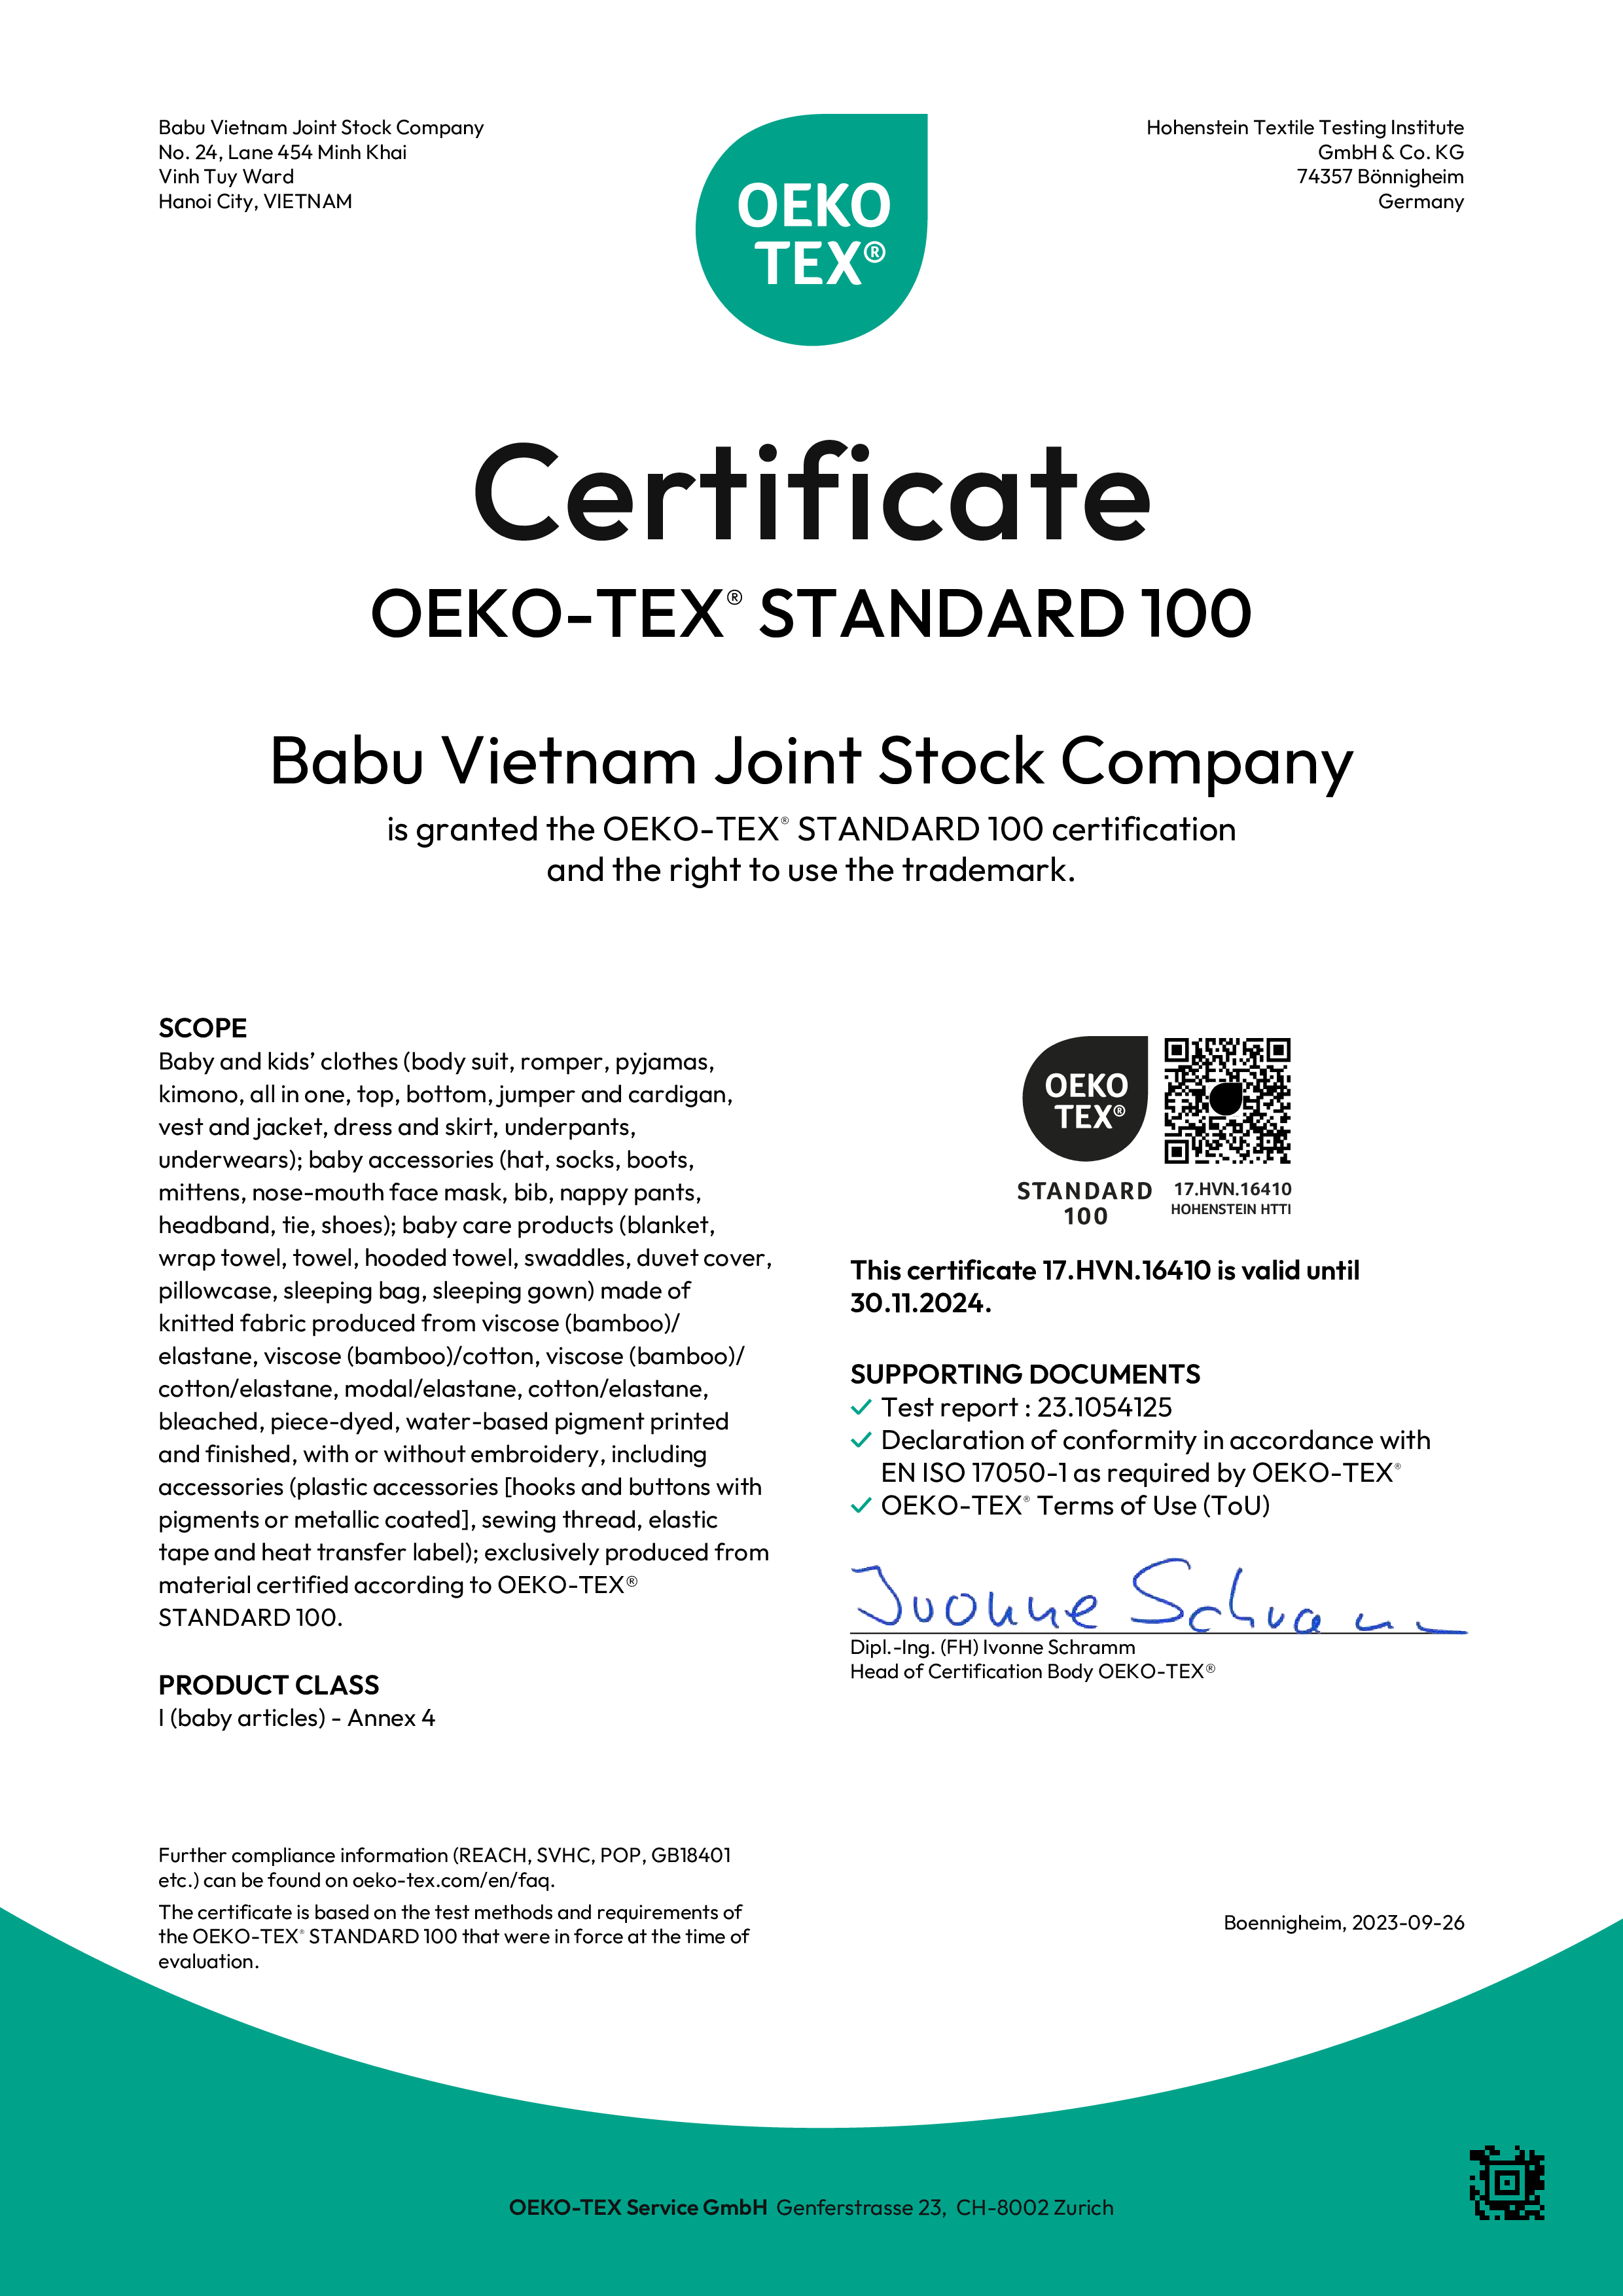  Chứng nhận OEKO-TEX 100